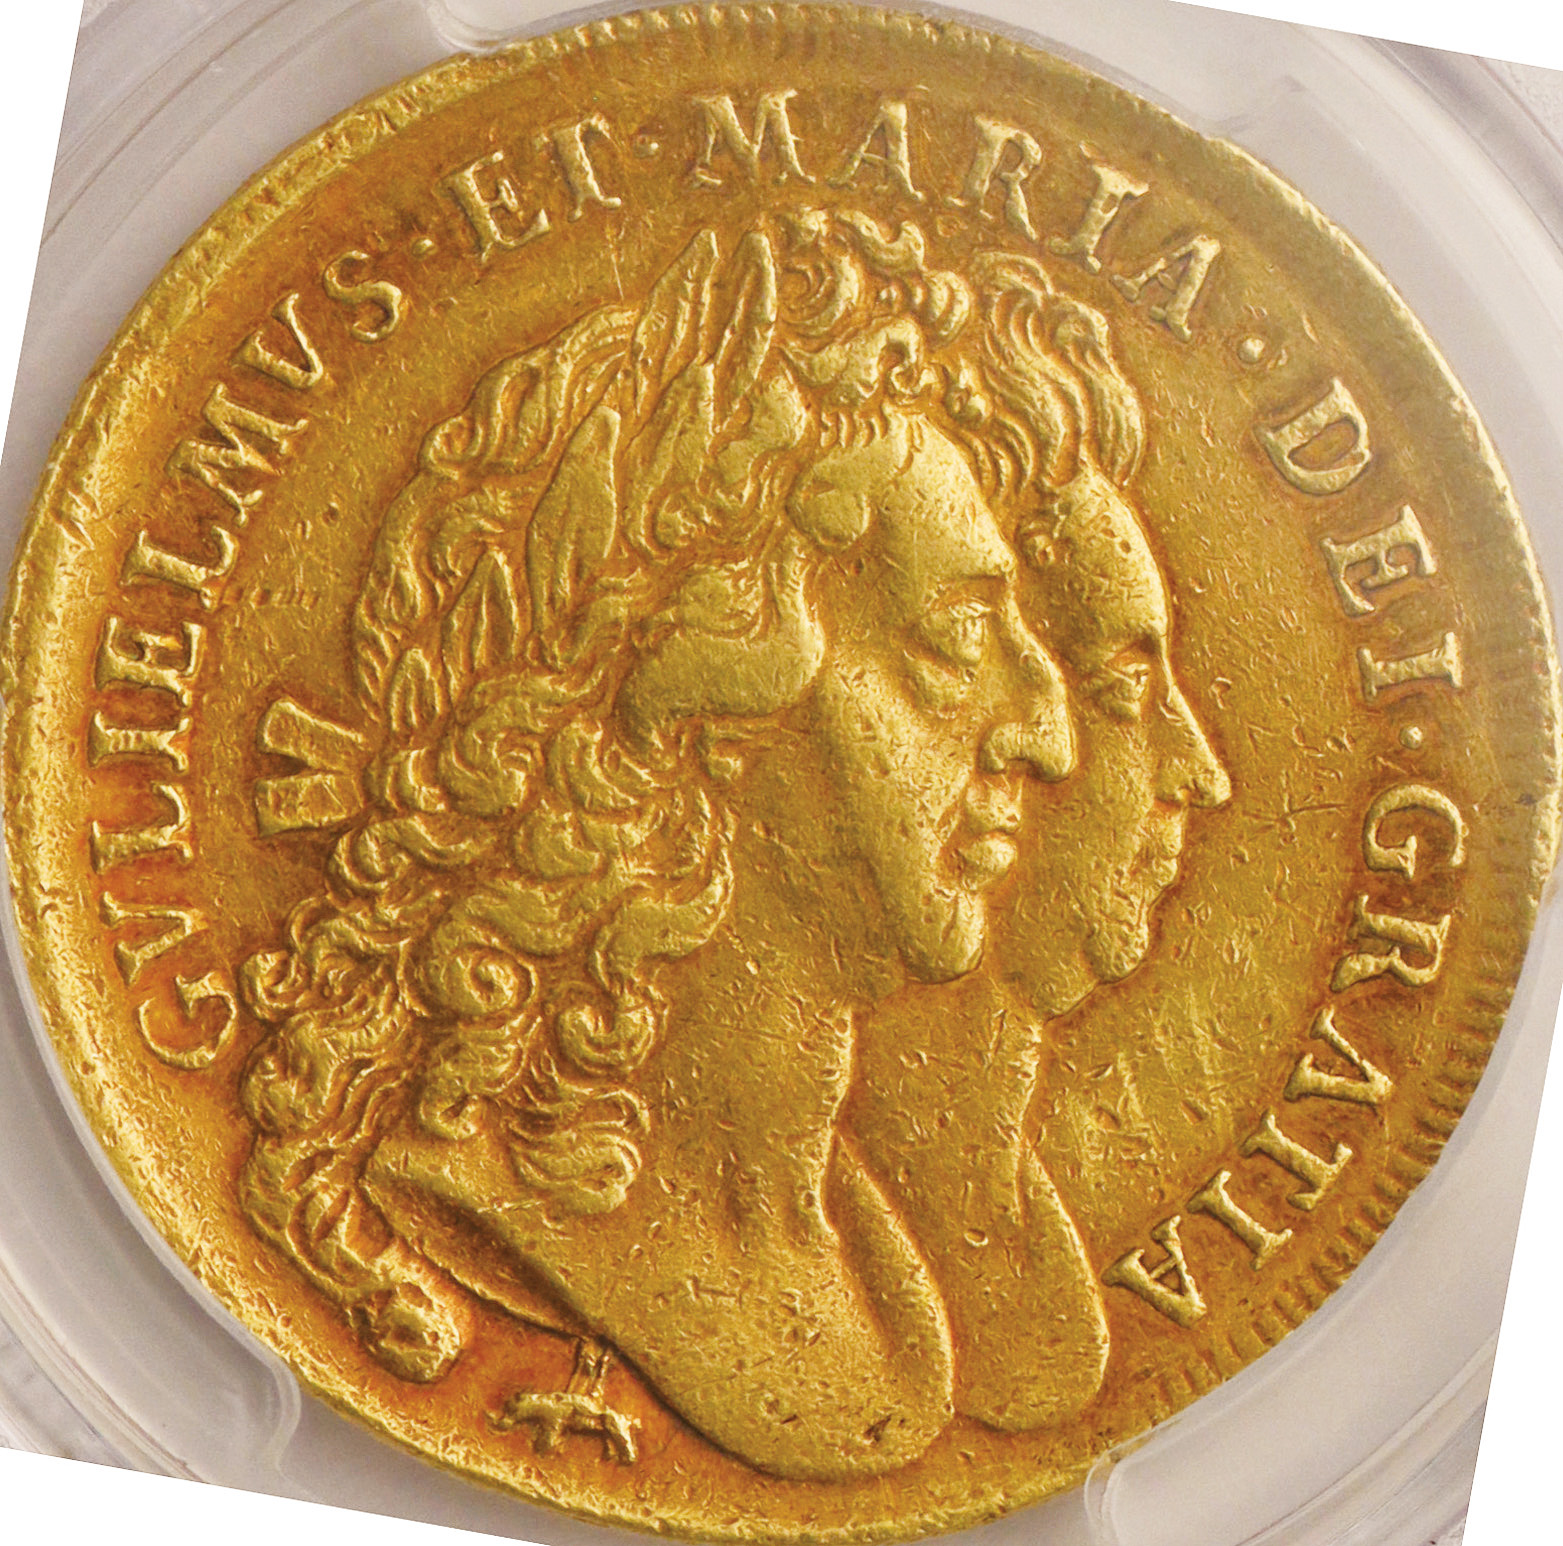 英国 (Great Britain) ウィリアムとメアリー像 右向き肖像 5ギニー金貨 